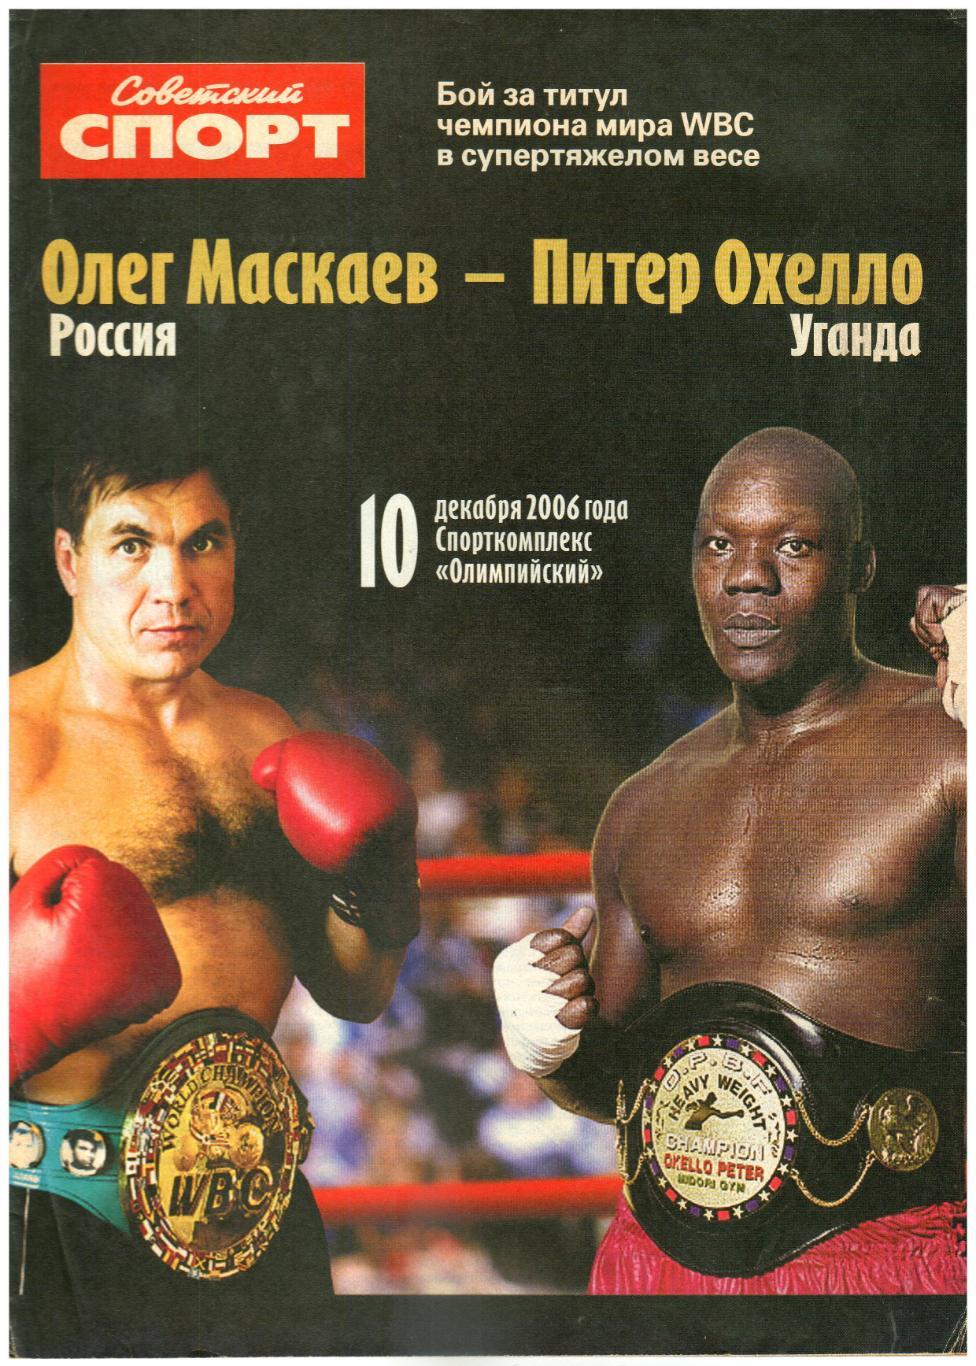 Олег Маскаев – Питер Охелло 10.12.2006 Бой за титул чемпиона WBC Свыше 90,7 кг